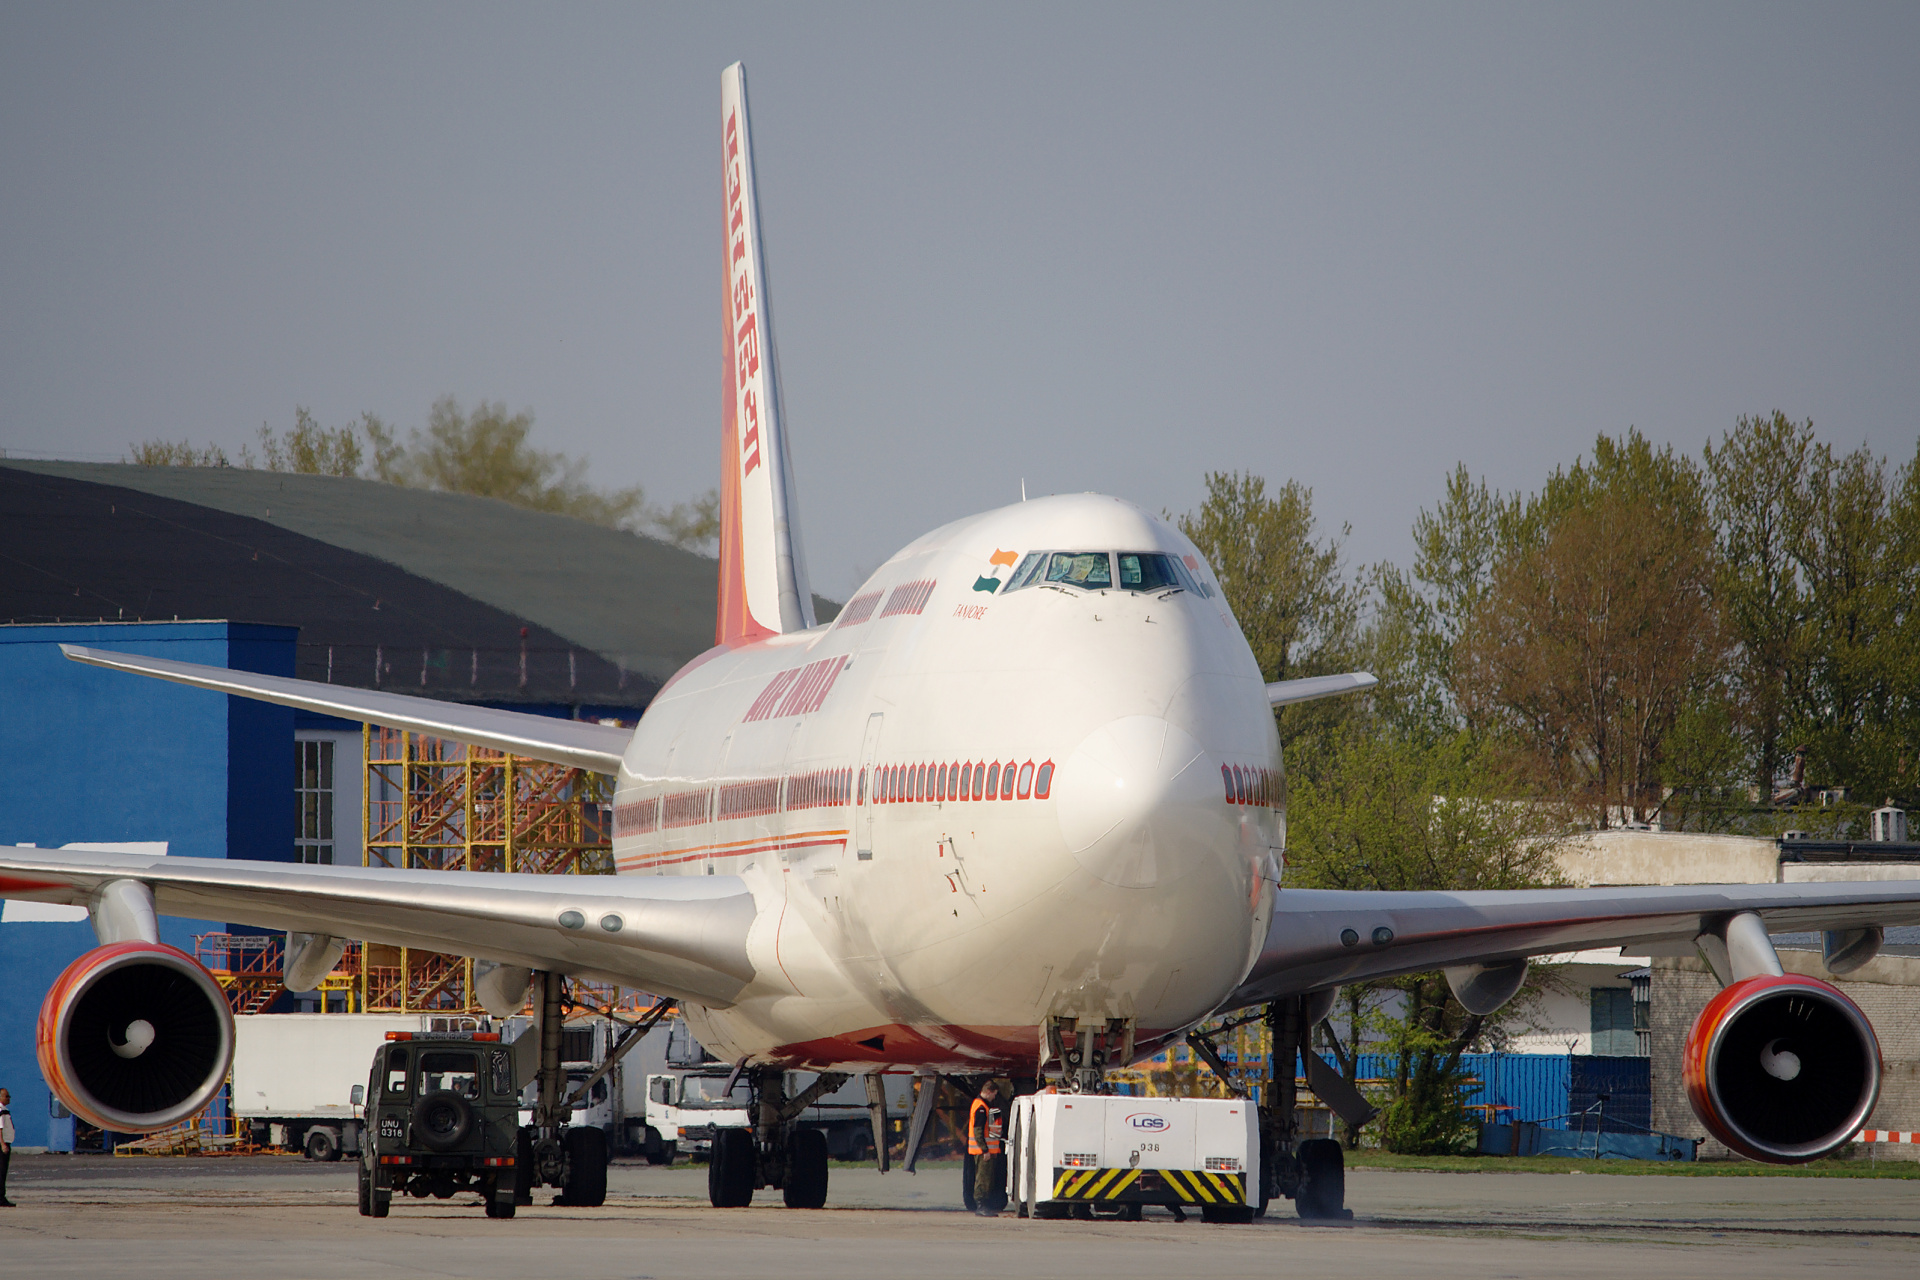 VT-ESN, Air India (Samoloty » Spotting na EPWA » Boeing 747-400)